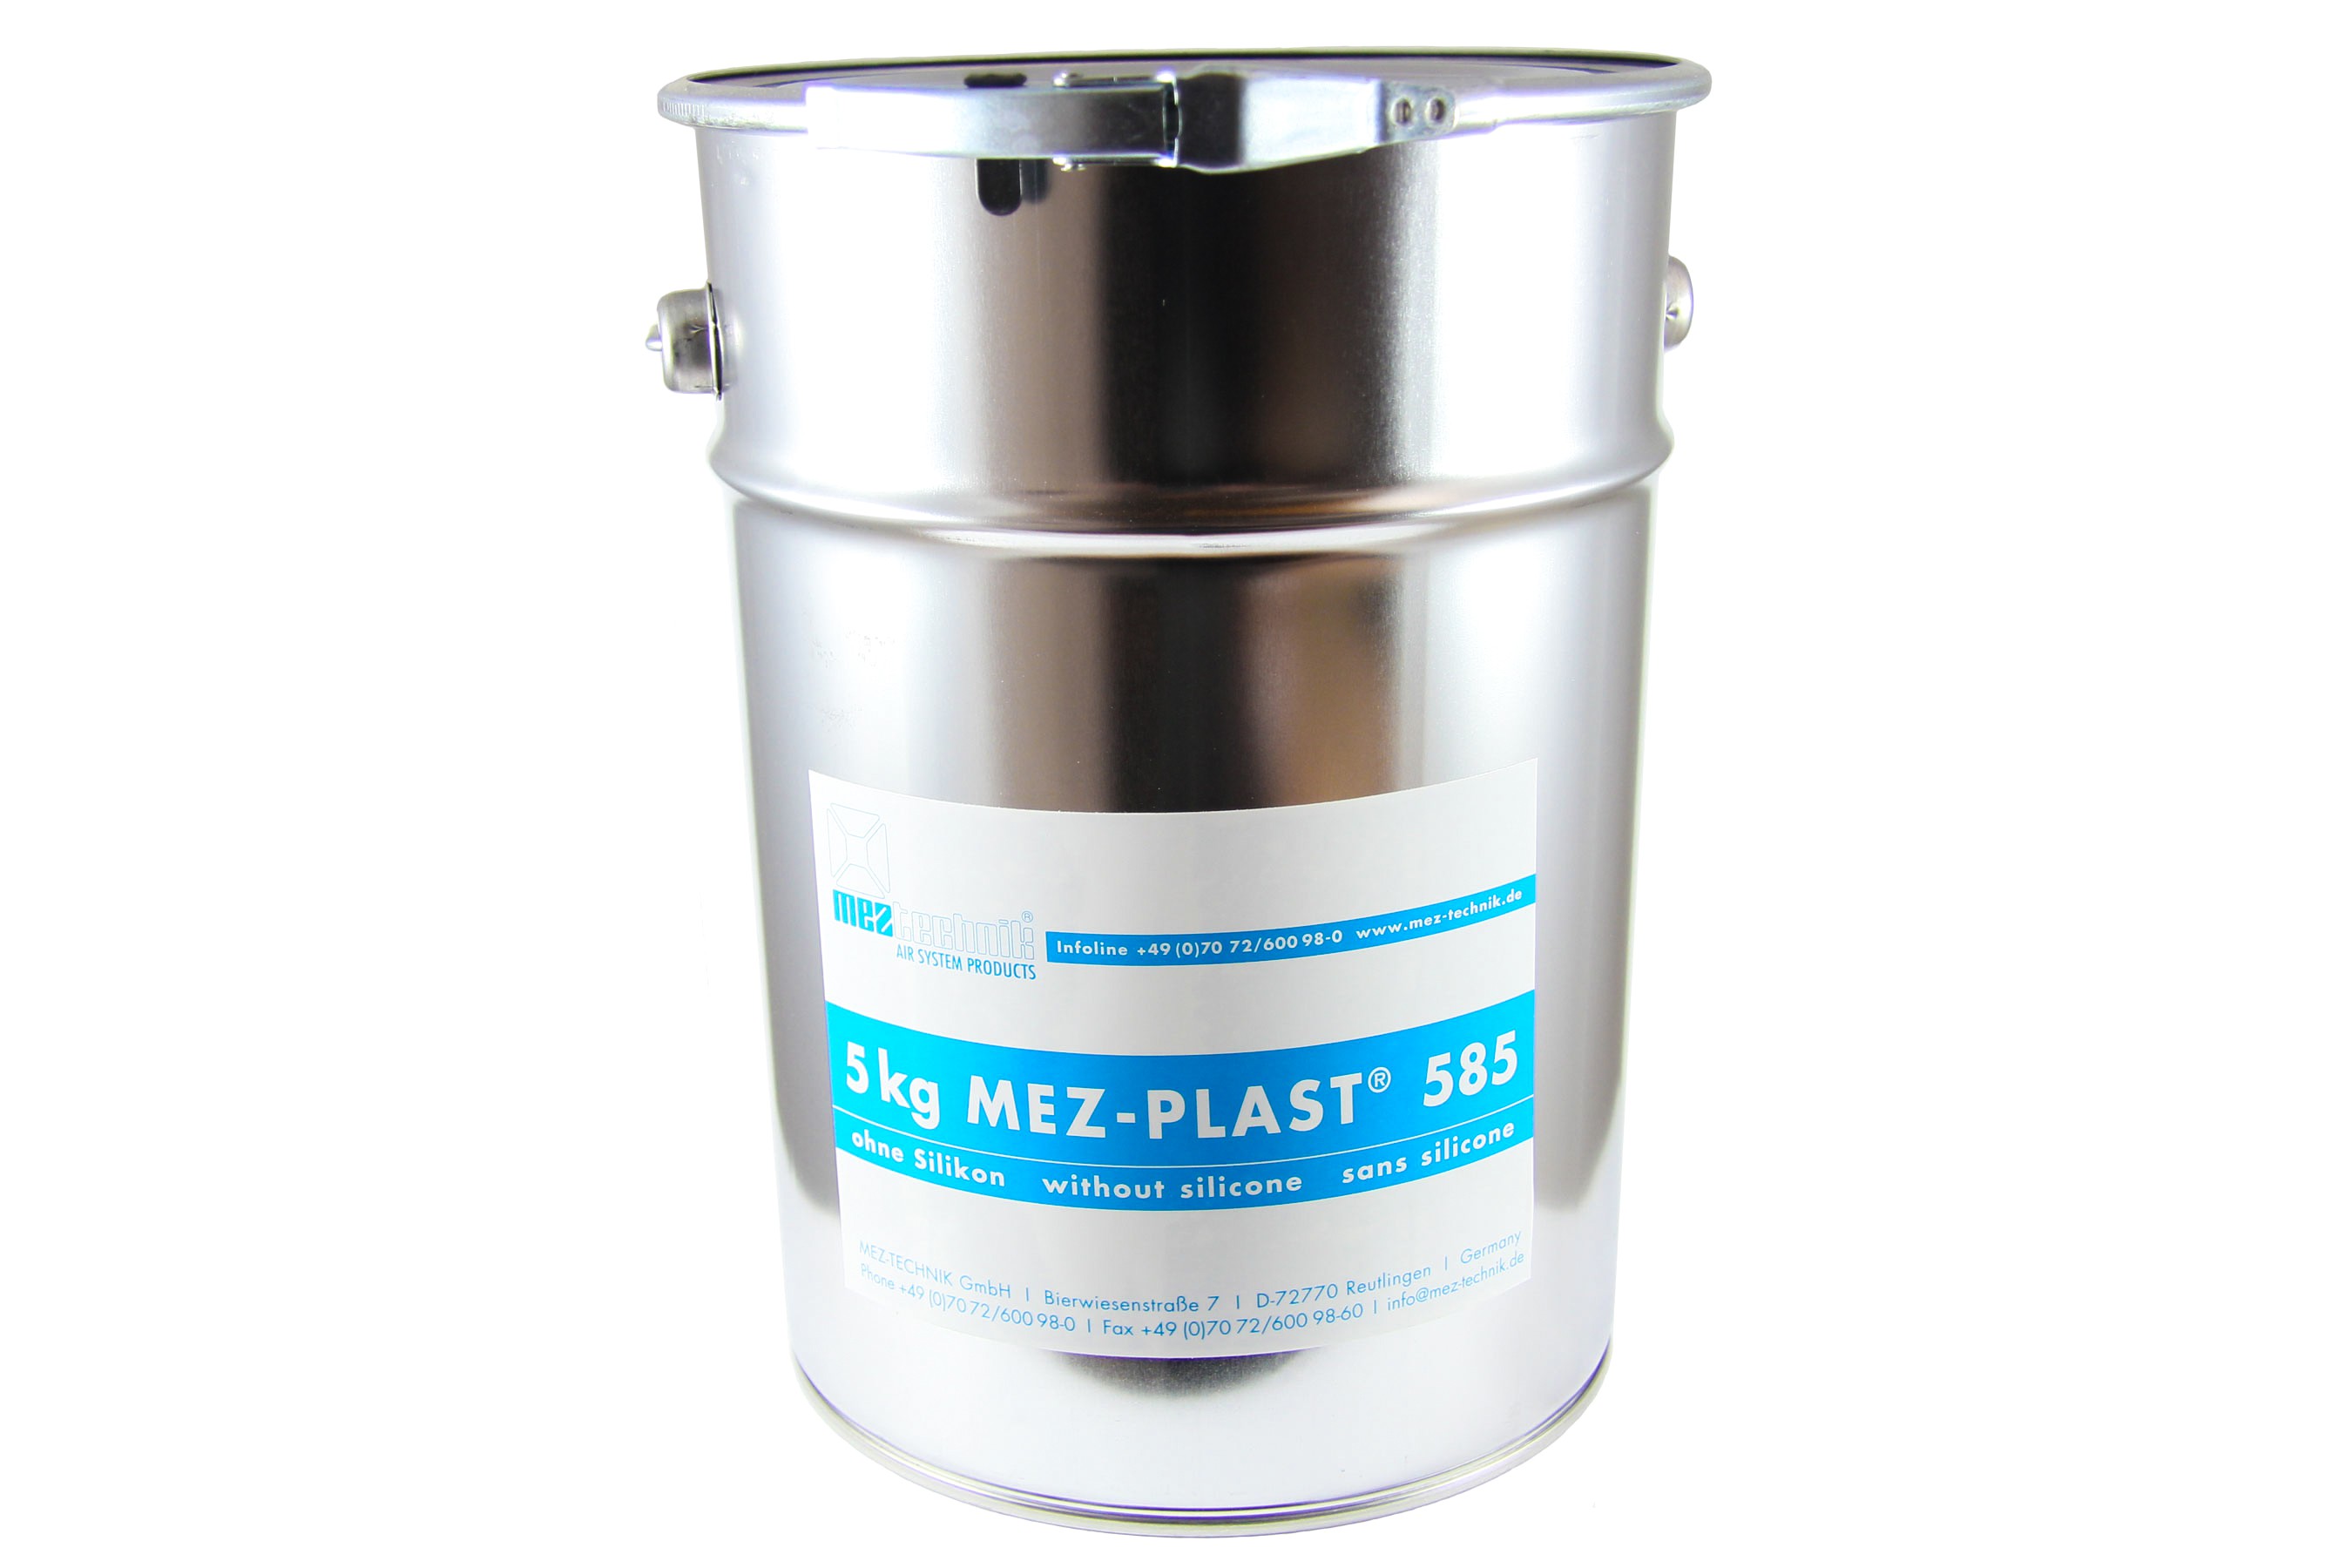 MEZ-PLAST 580 - pot 5 Kg